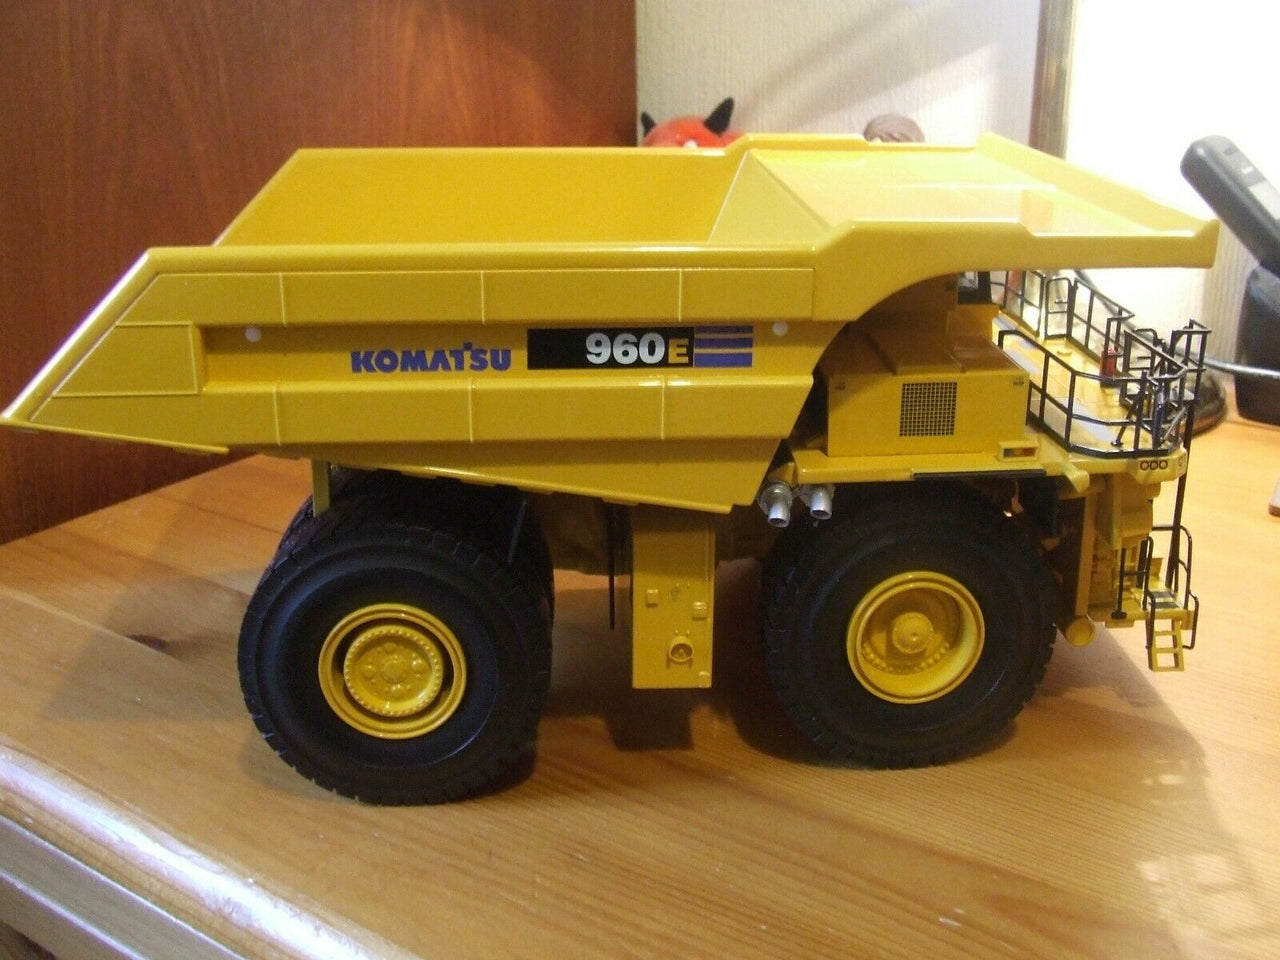 50-3138 कोमात्सु 960ई खनन ट्रक 1:50 स्केल (बंद मॉडल)